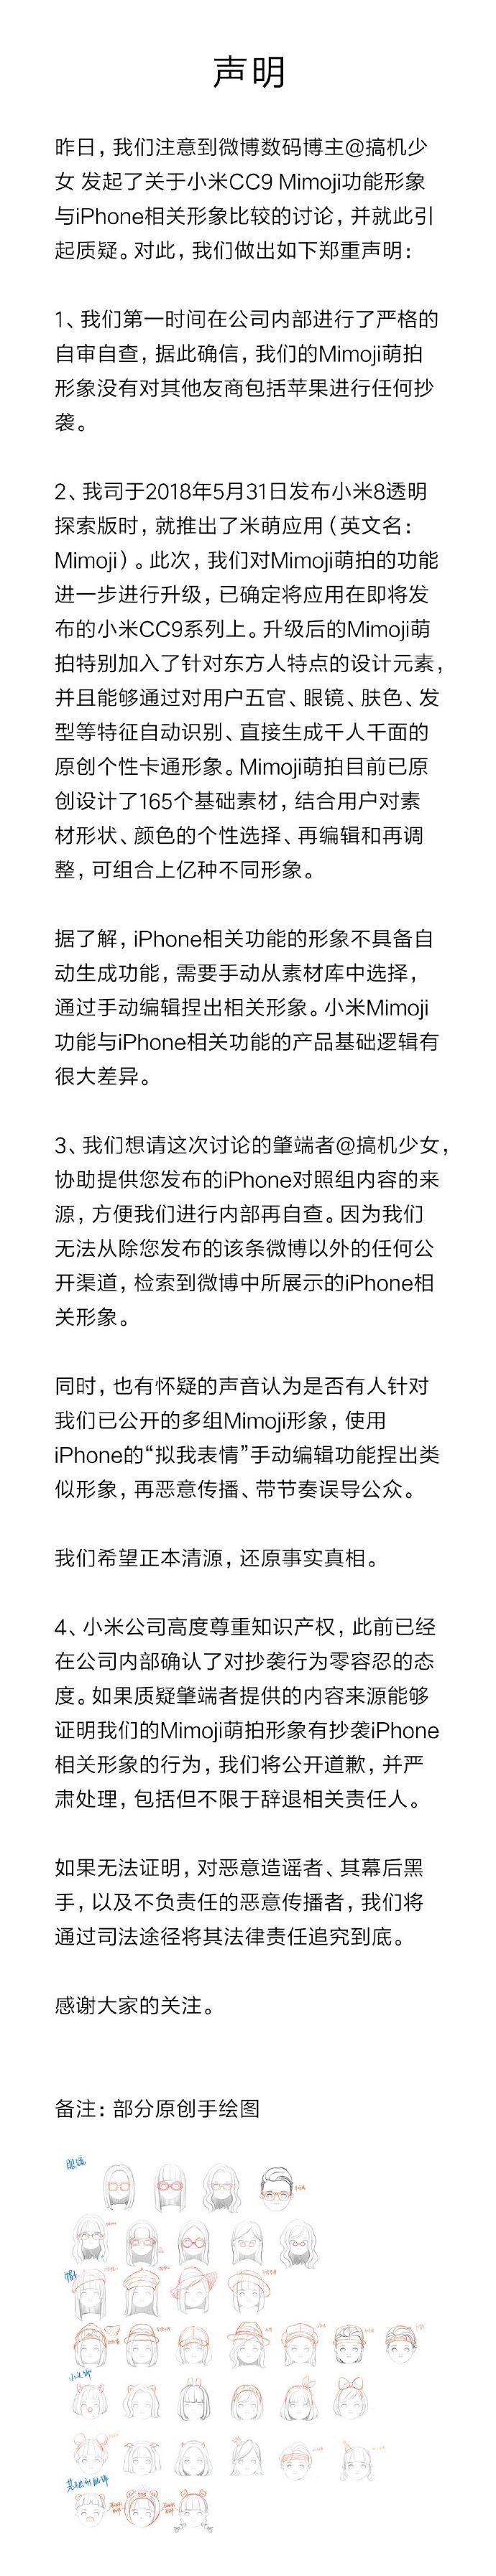 苹果3gs手机报价，小米公布声明：Mimoji 萌拍没有任何剽窃 将接纳法律手段追究恶意造谣者、其幕后黑手、恶意传播者的责任